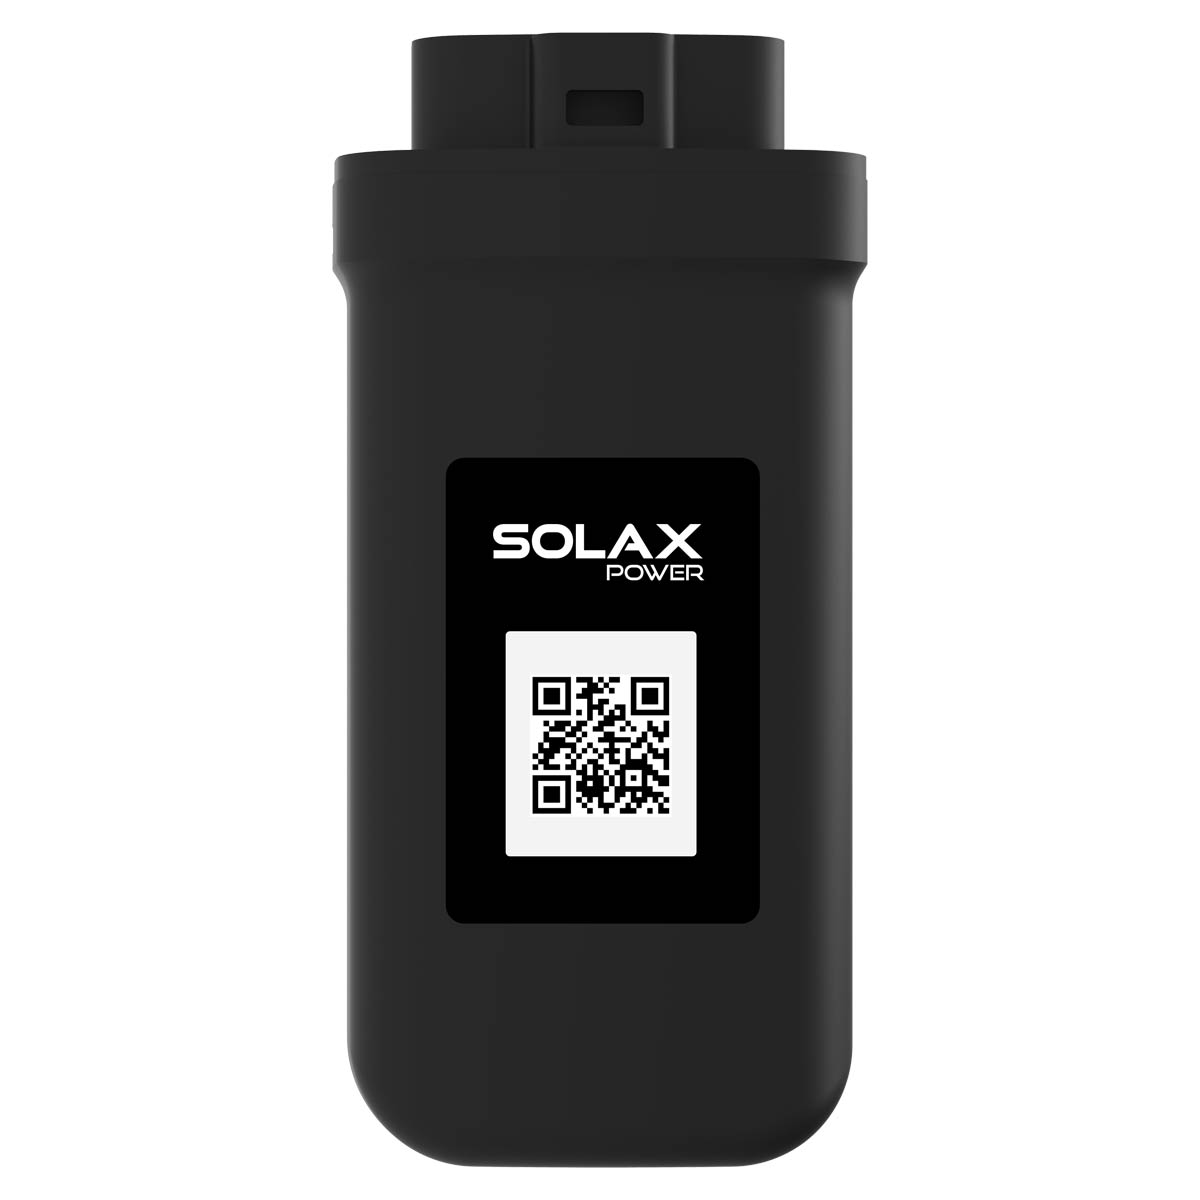 SolaX 3,6kWp Mini PV-Anlage mit X1 Boost 3,6kW und 3600W Solarpanele inkl. WiFi